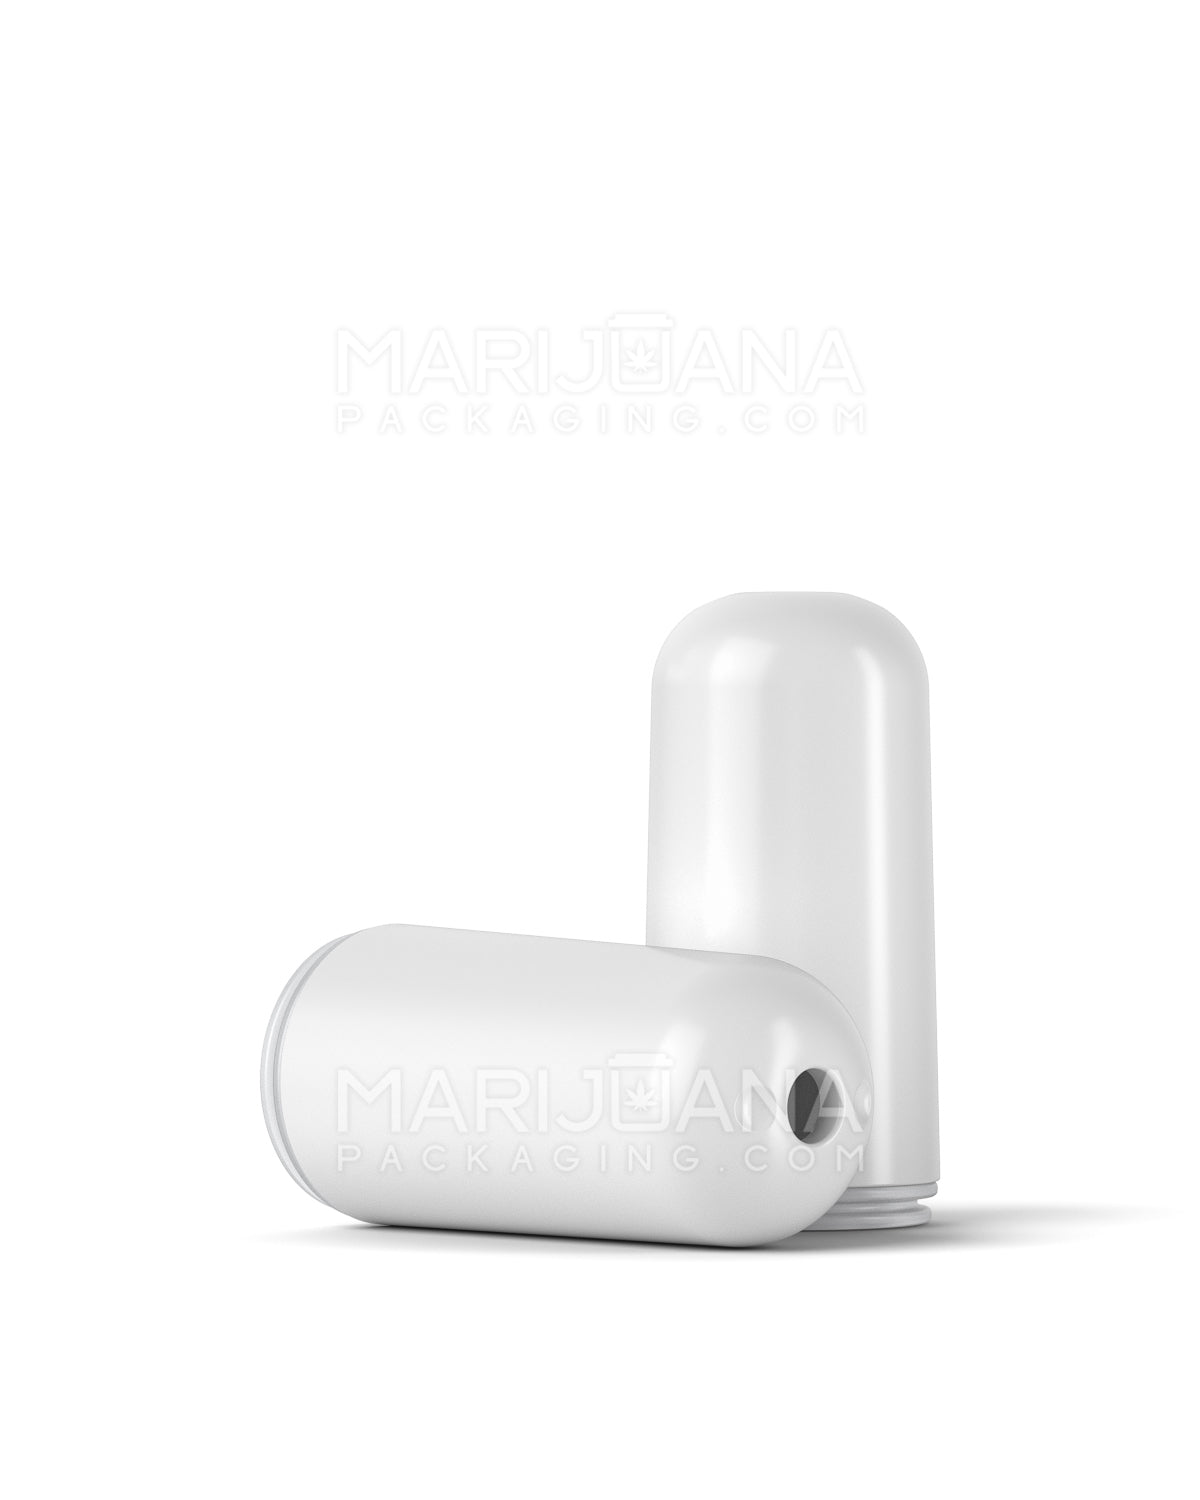 AVD | Bullet Vape Mouthpiece for Glass Cartridges | White Ceramic - Screw On - 600 Count - 1